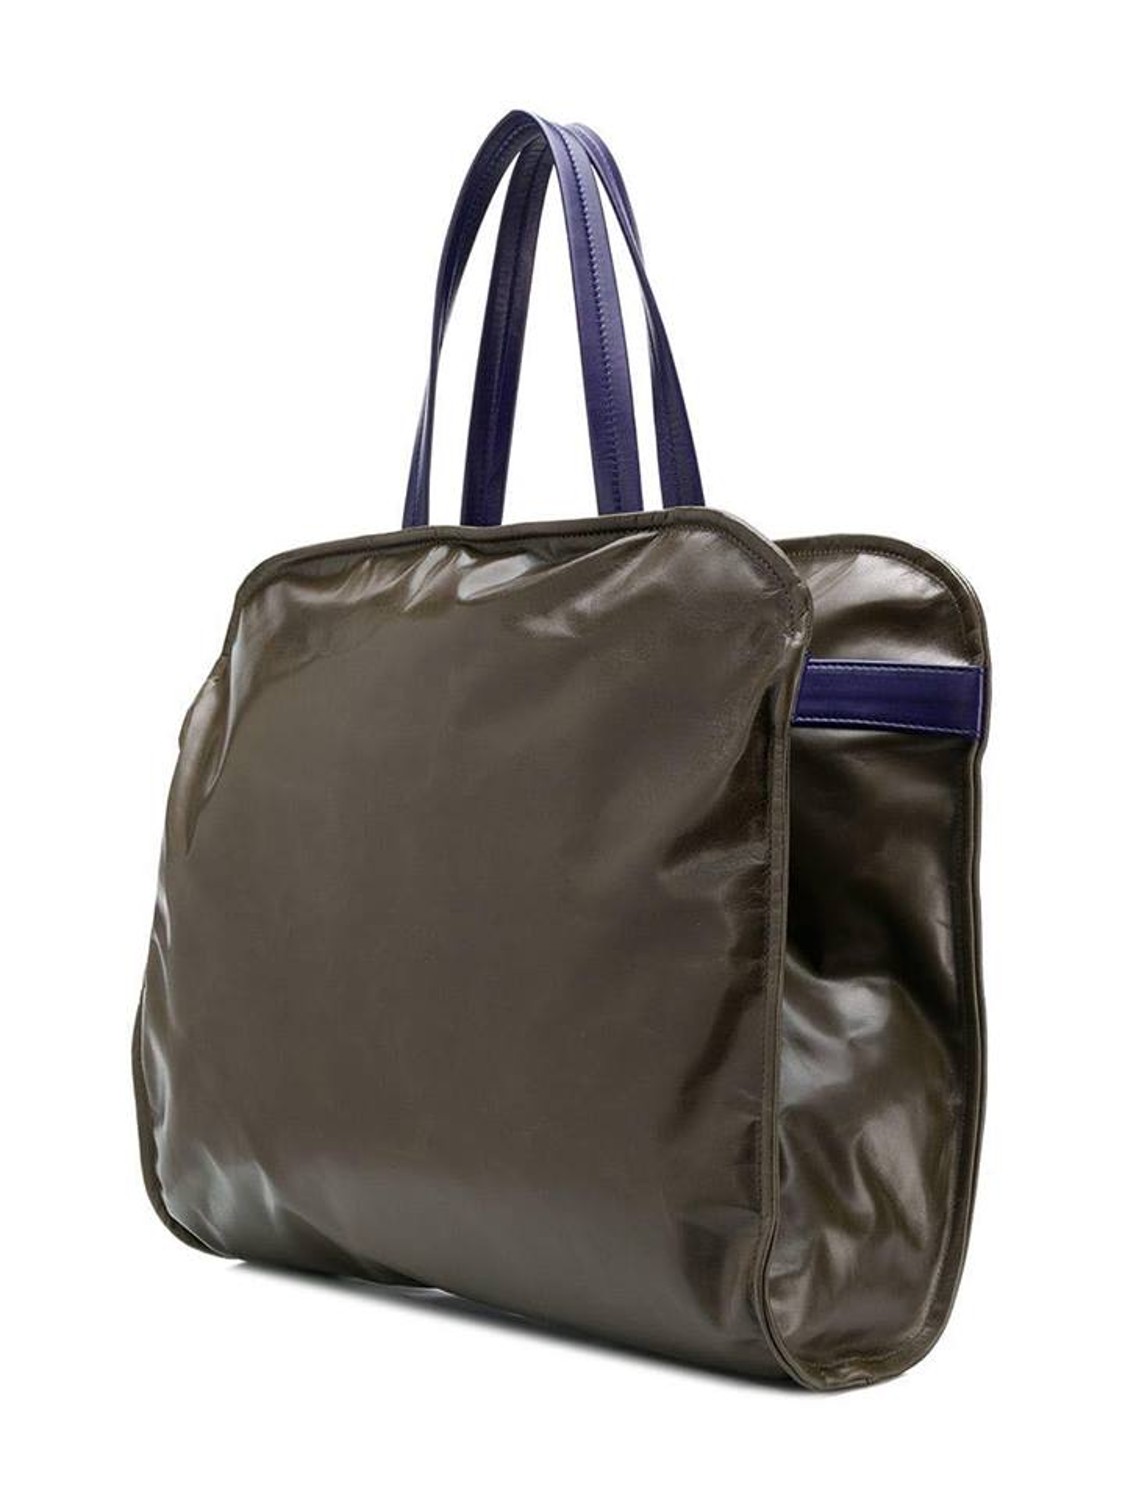 shop Marni  Borse: Borsa Marni, modello shopping bag, in pelle verde e viola, chiusura con zip, borsellino interno con zip.

Composizione: 100% pelle. number 1317